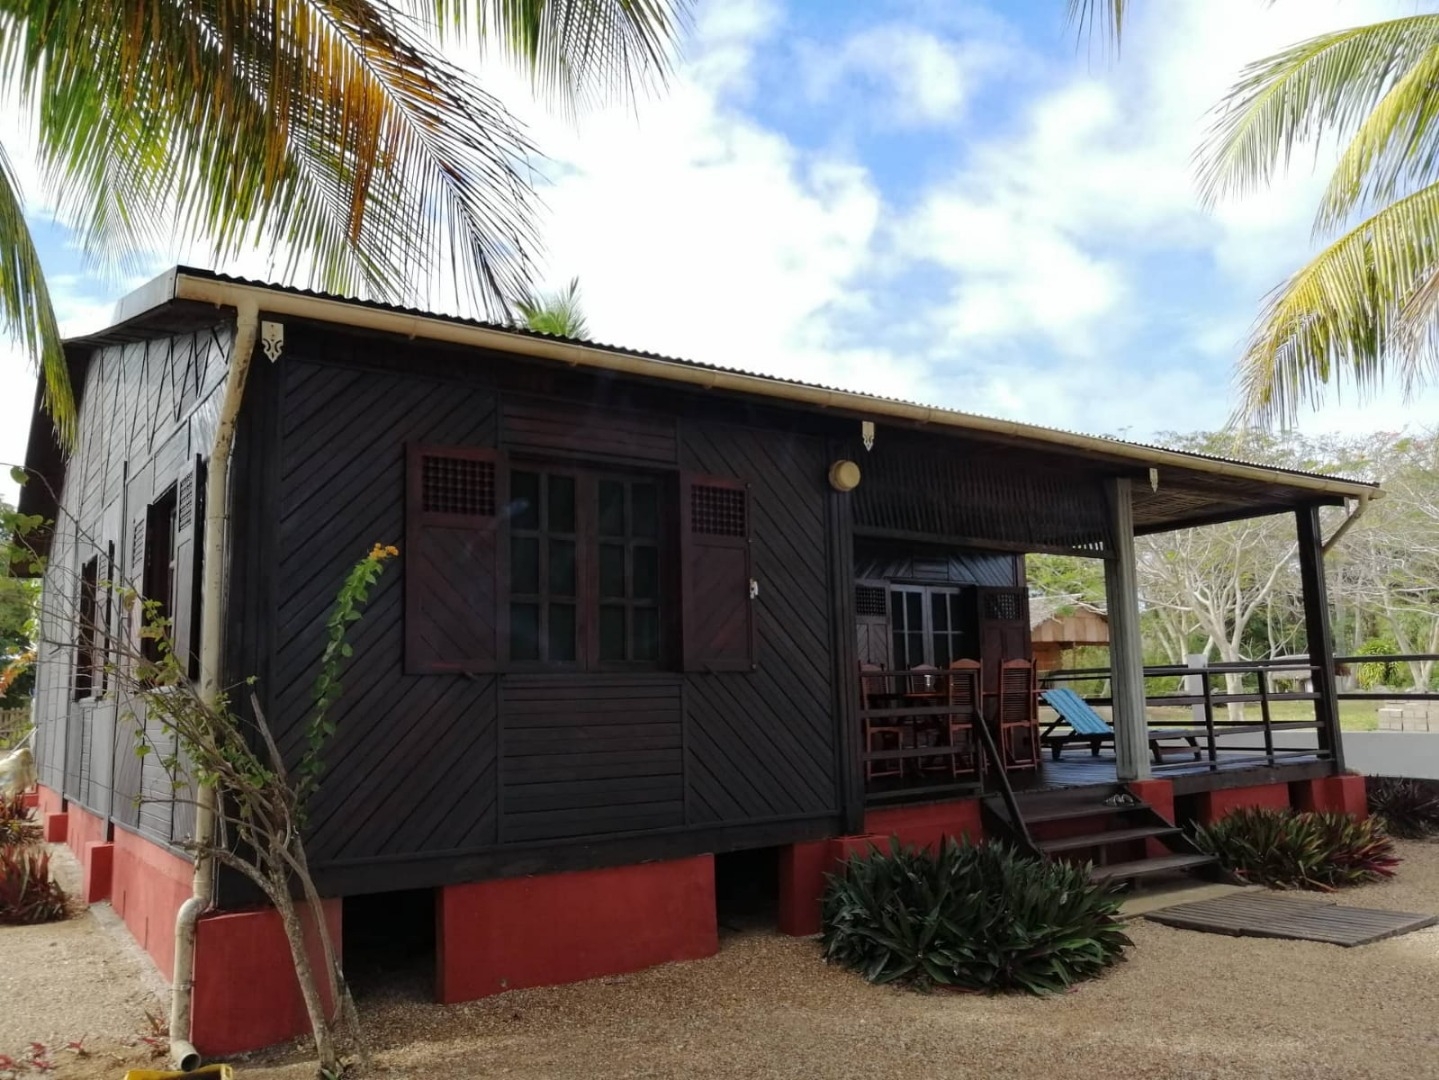 A vendre, maison pieds dans l'eau situé sur la presqu'île d'AMBATO